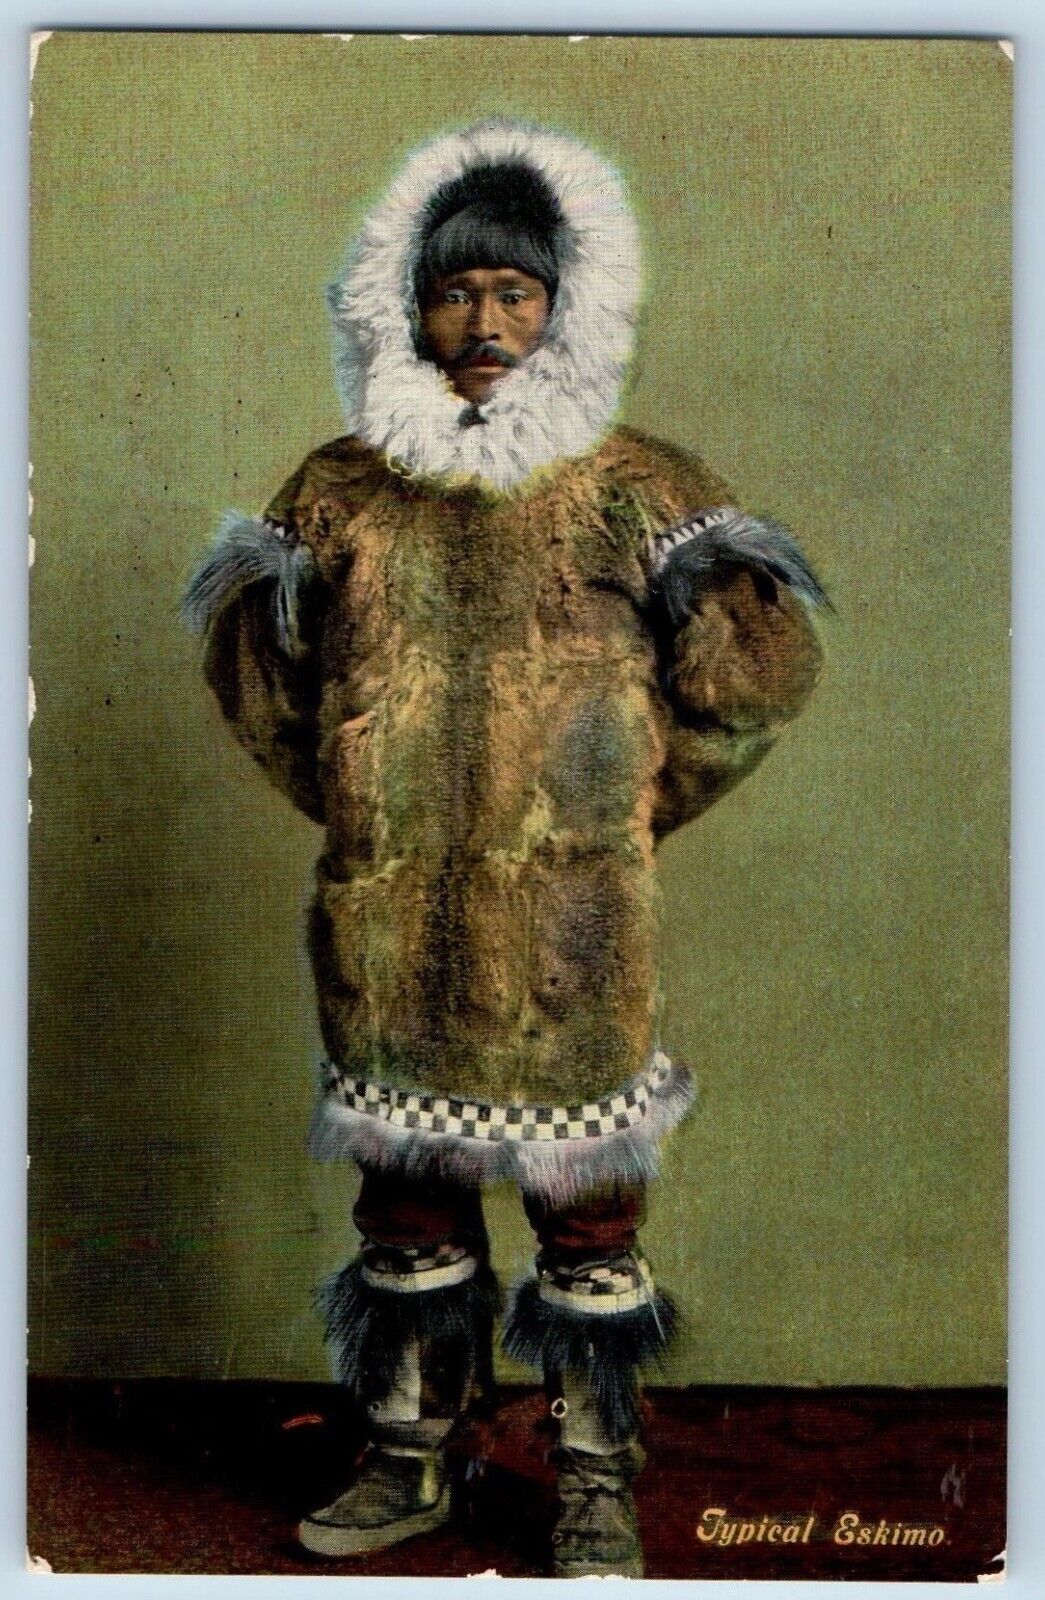 Alaska AK Postcard Typical Eskimo Man On Winter Suit c1910's Unposted Antique